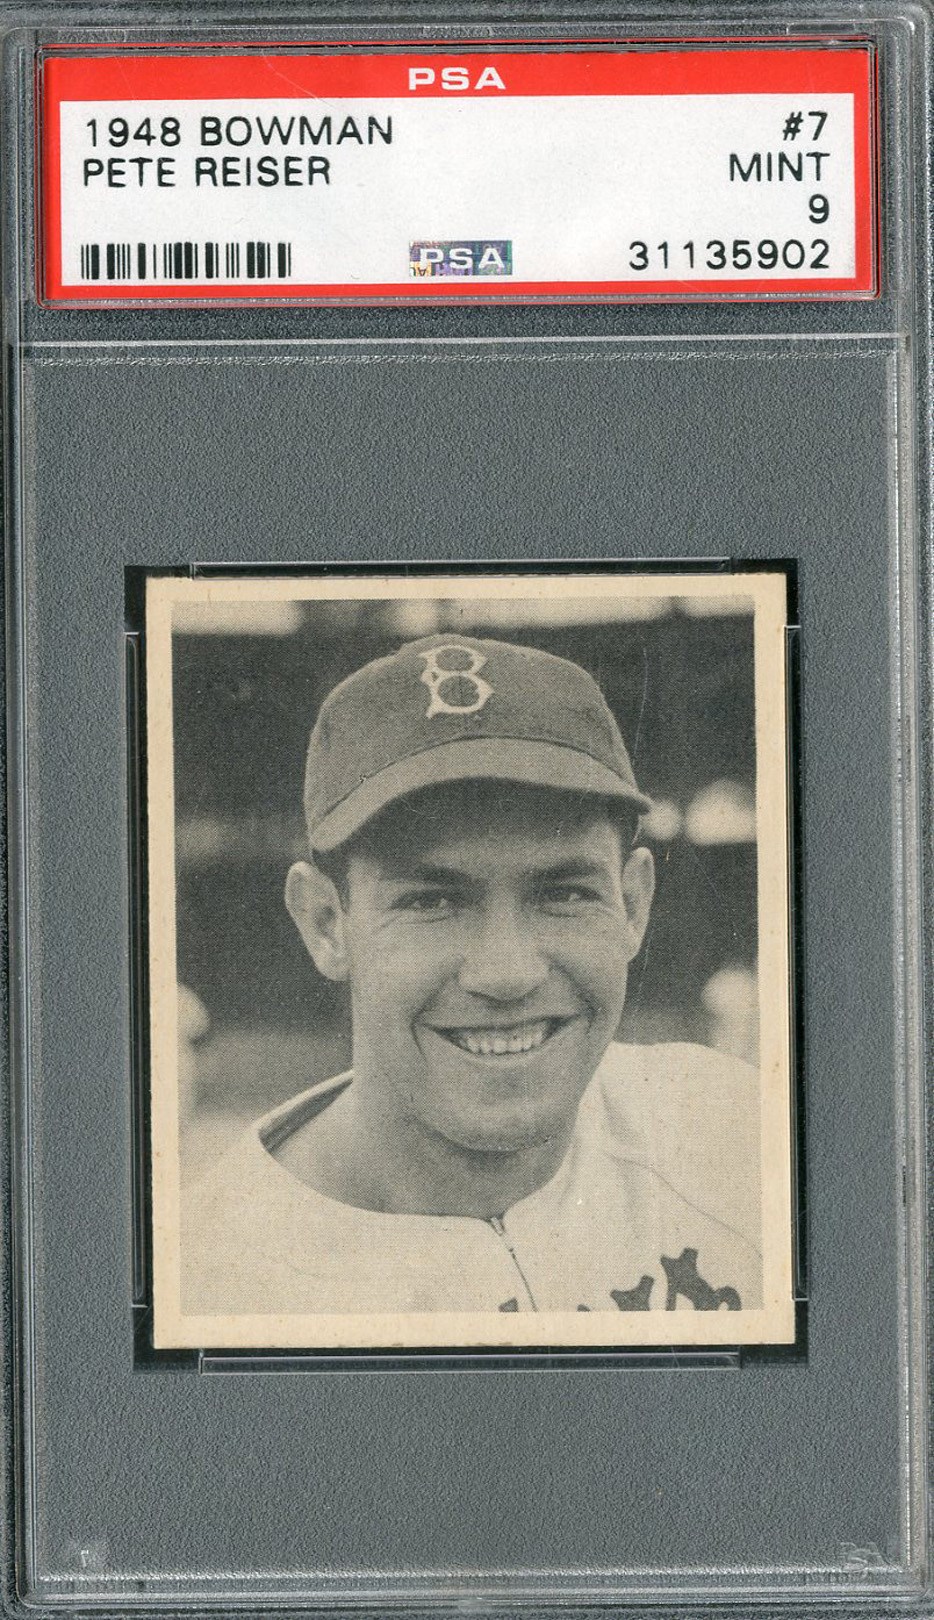 - 1948 Bowman #7 Pete Reiser Rookie - PSA MINT 9